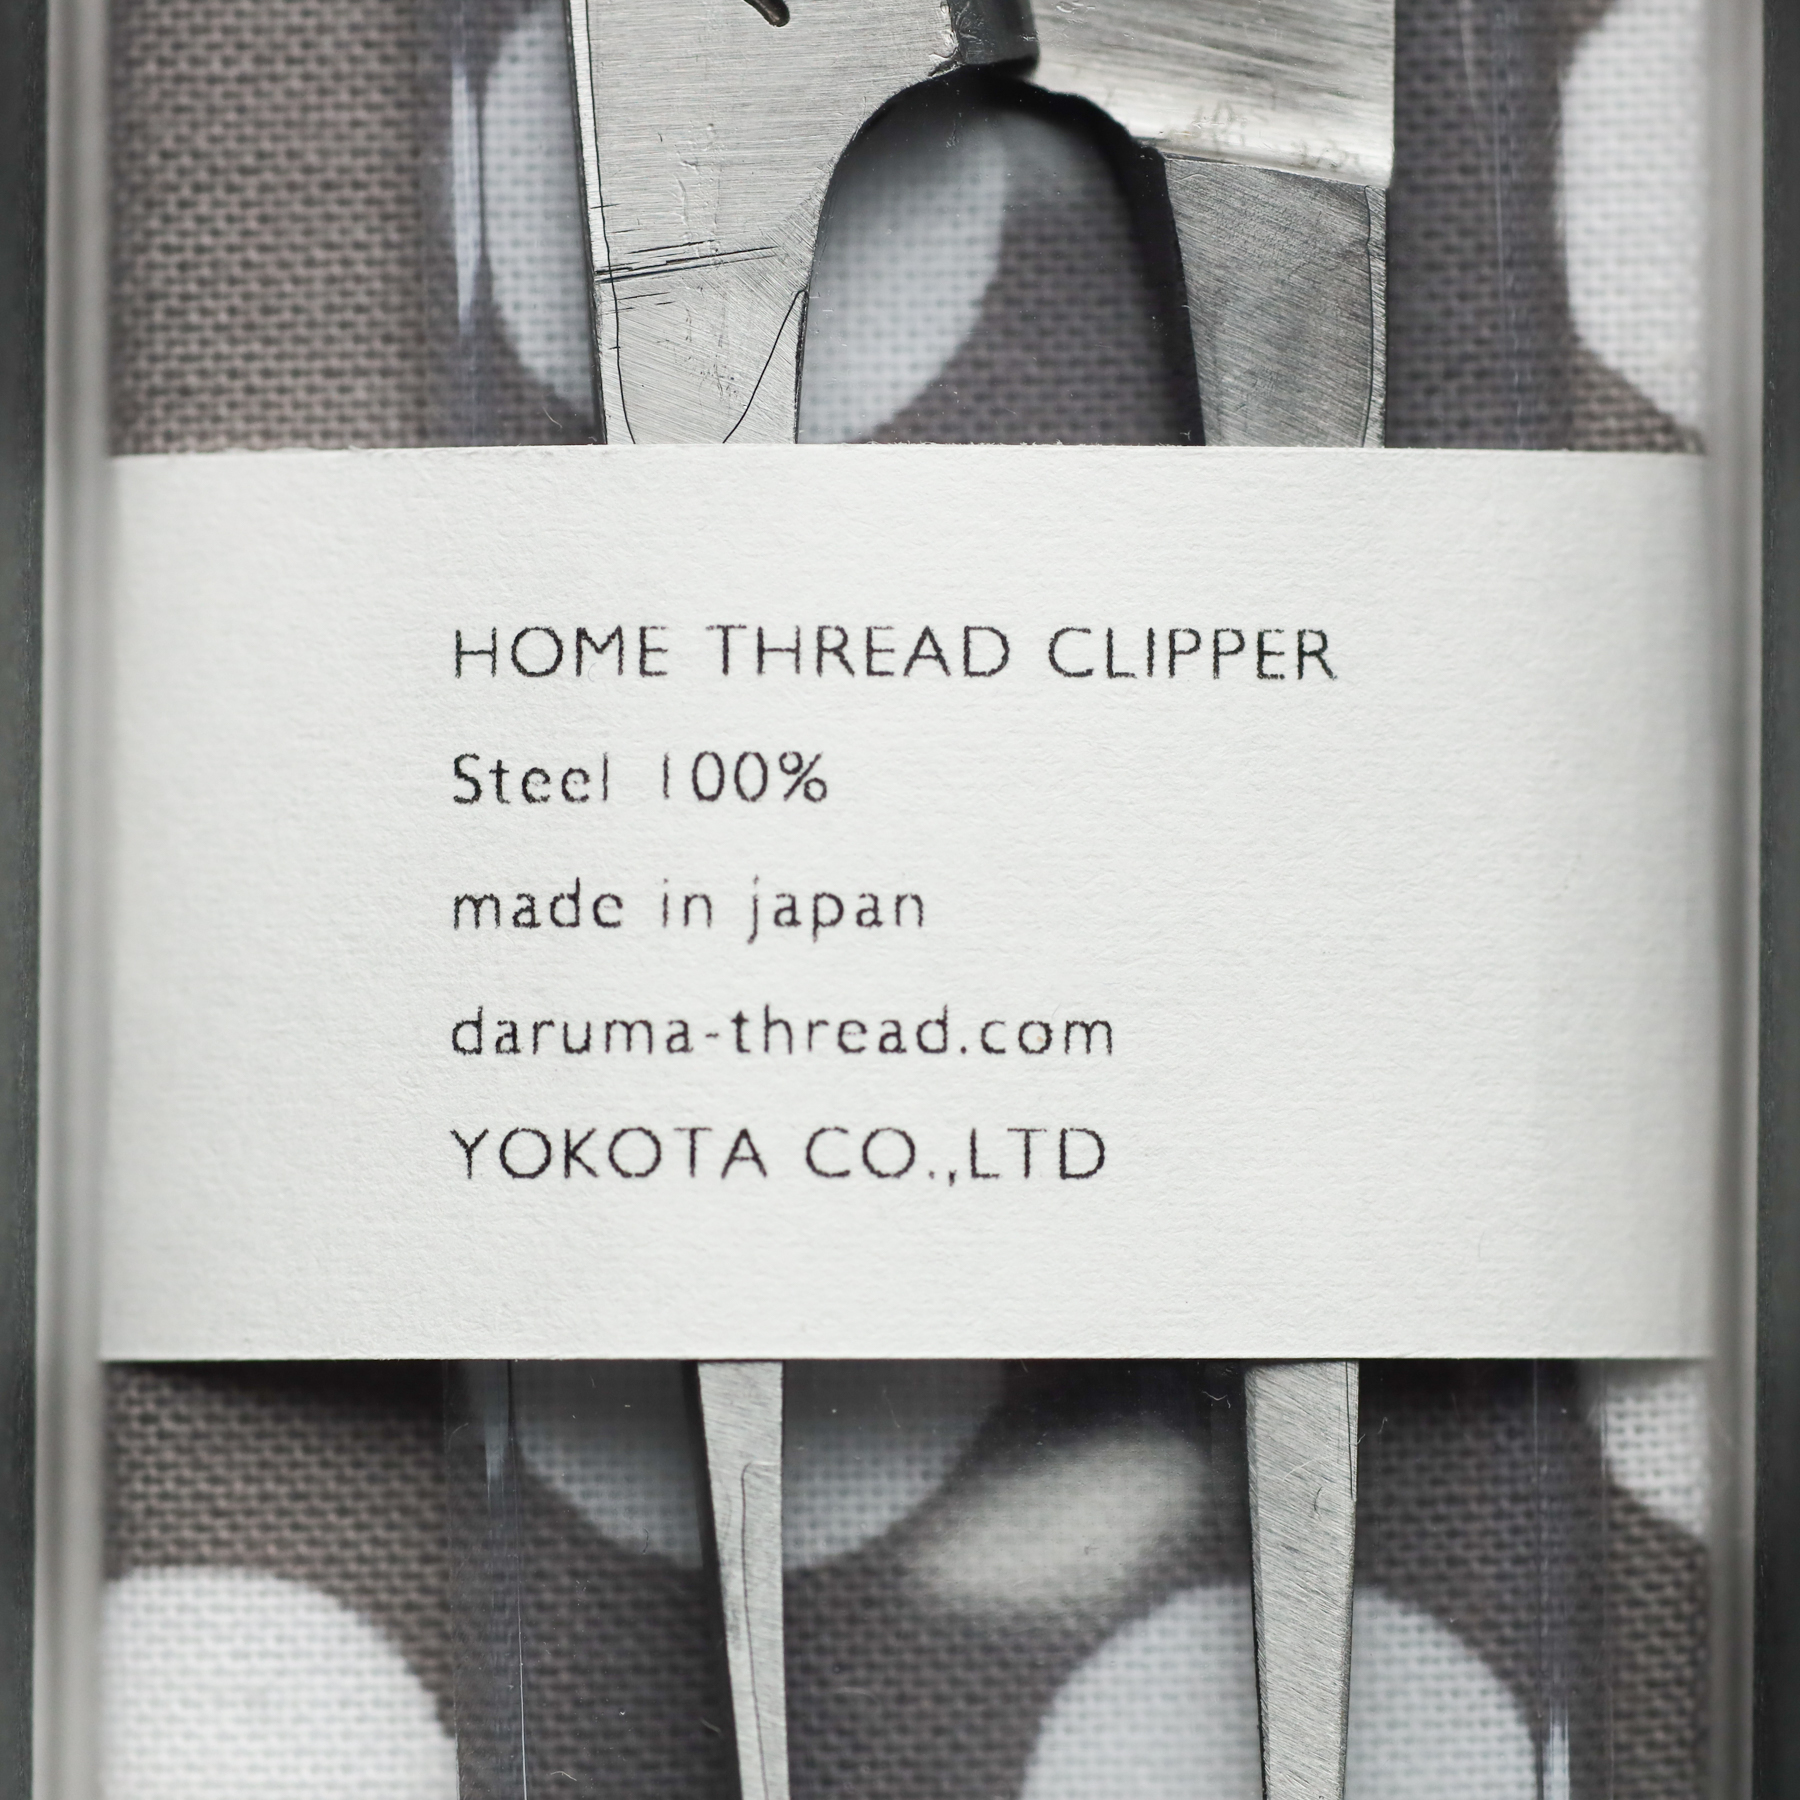 Home Thread Clipper